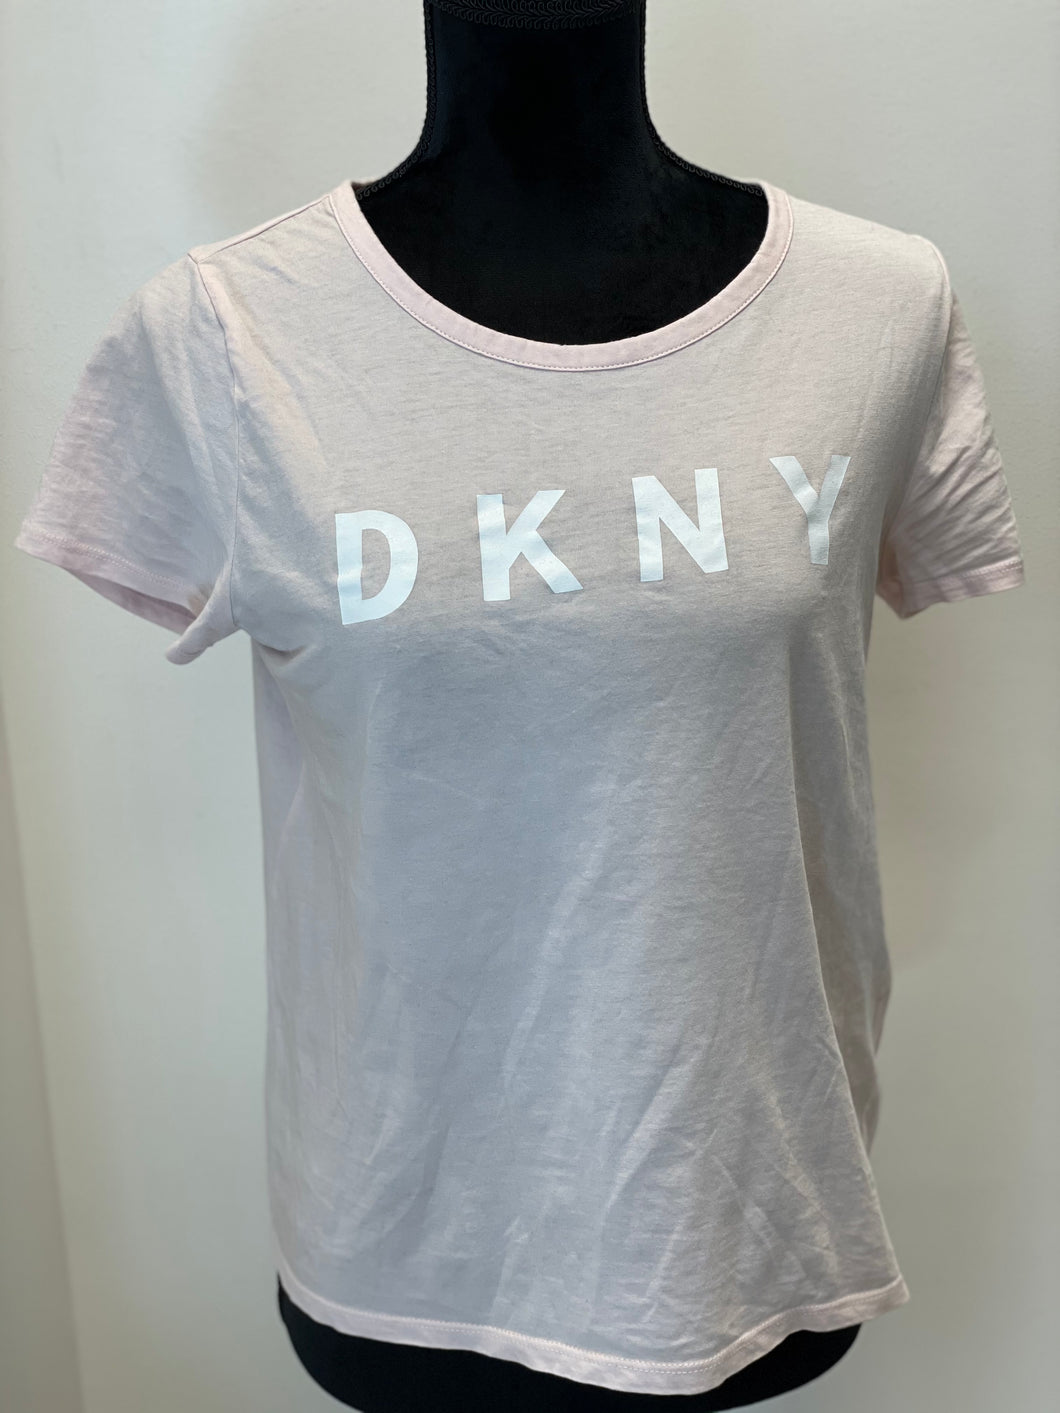 Blus från DKNY